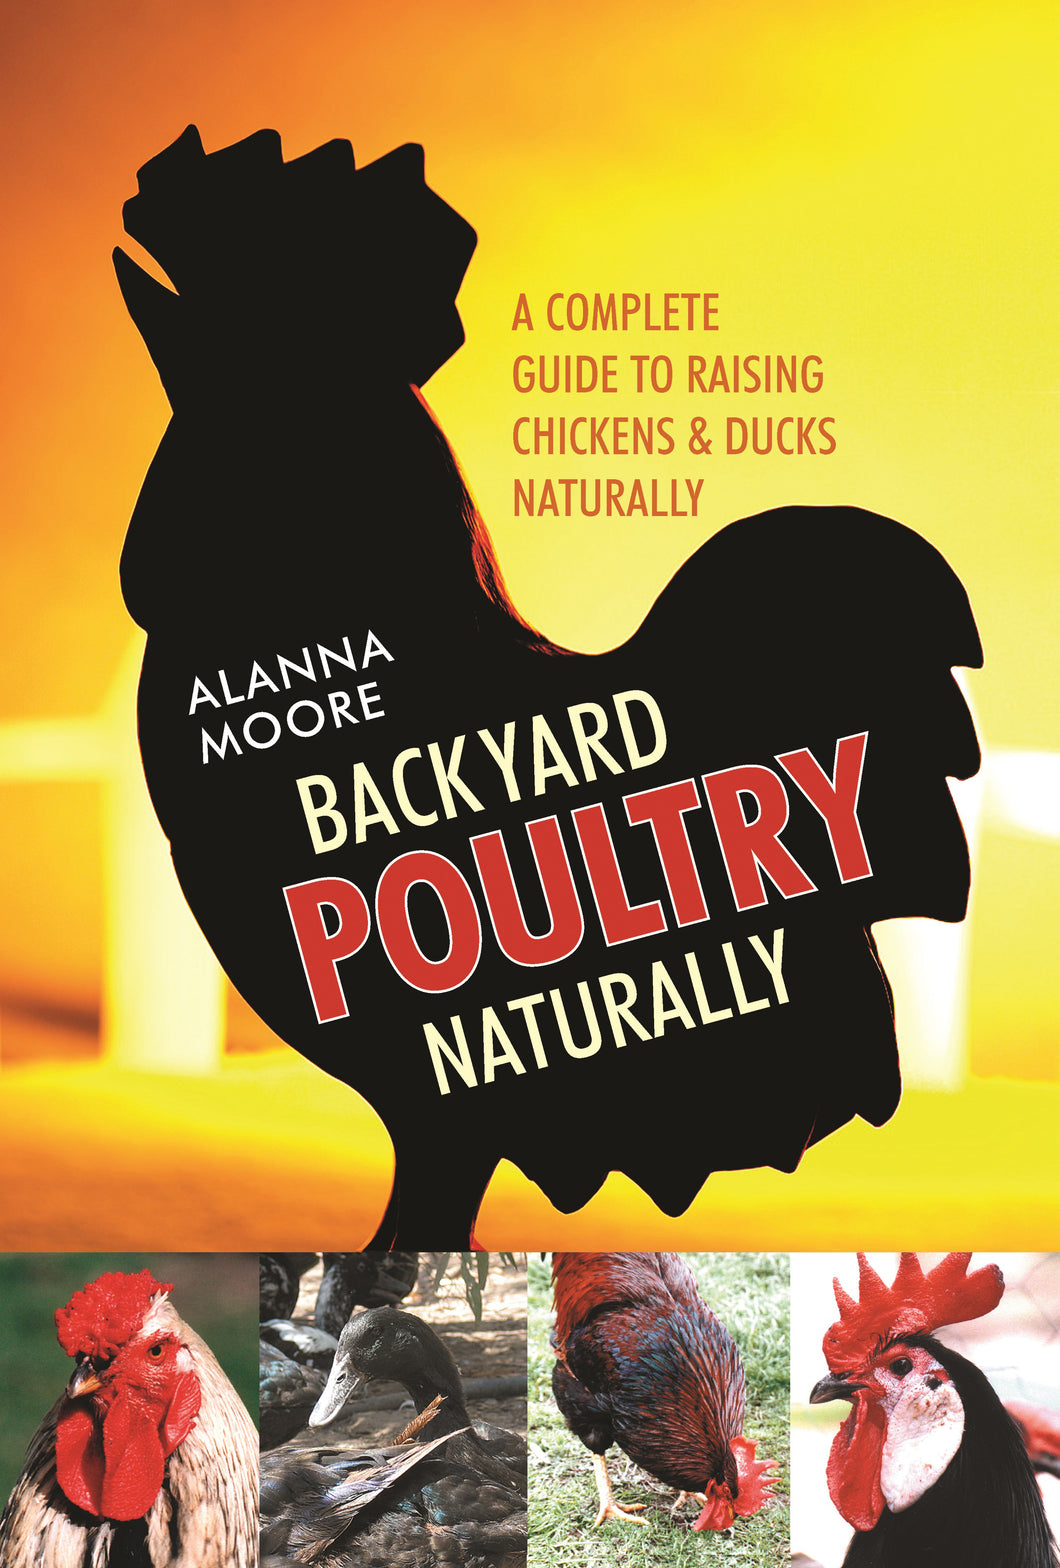 Backyard Poultry Naturally